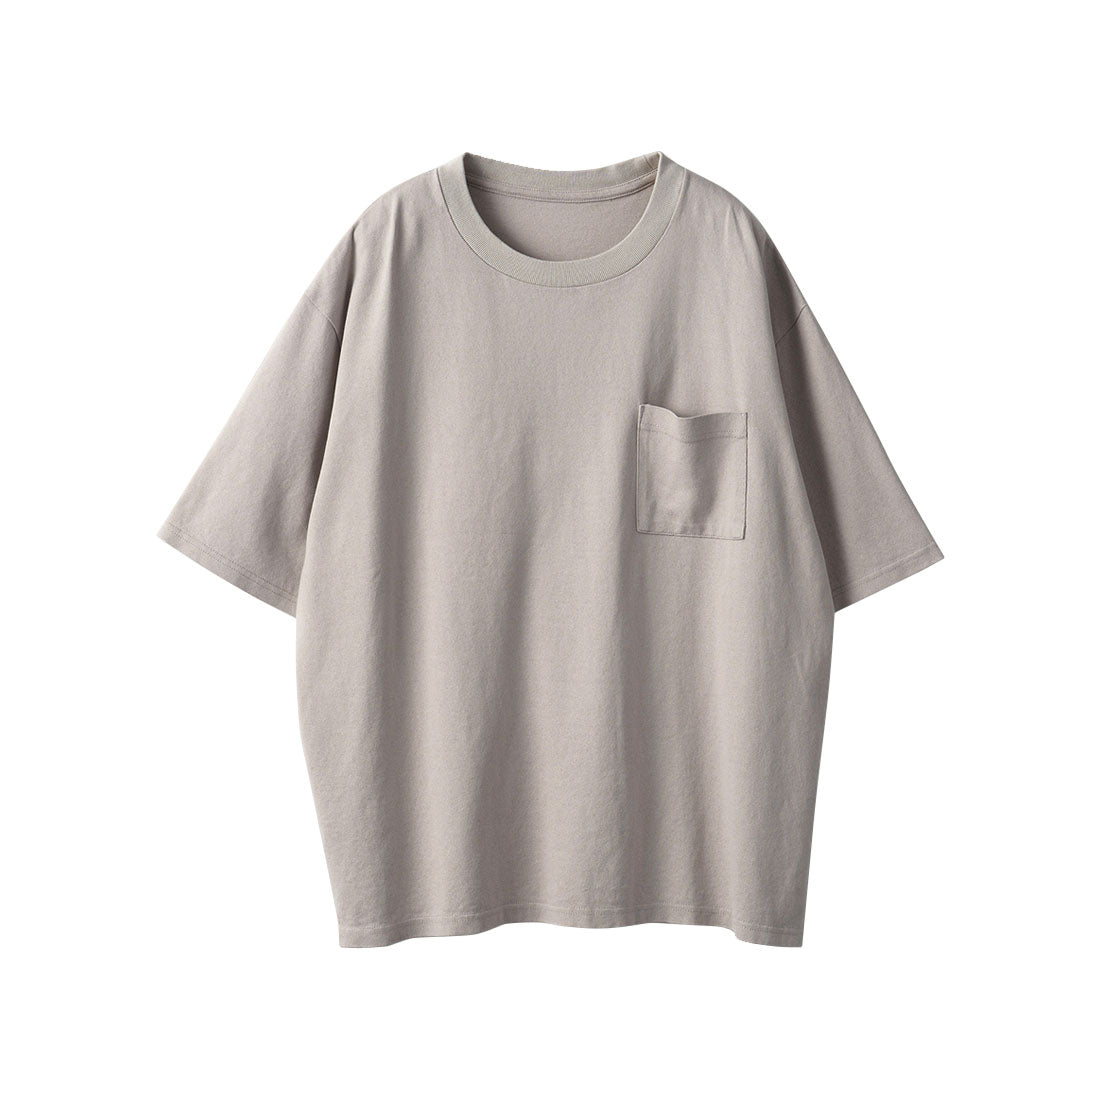 Genderless COMFORT T-SHIRT / Tシャツ